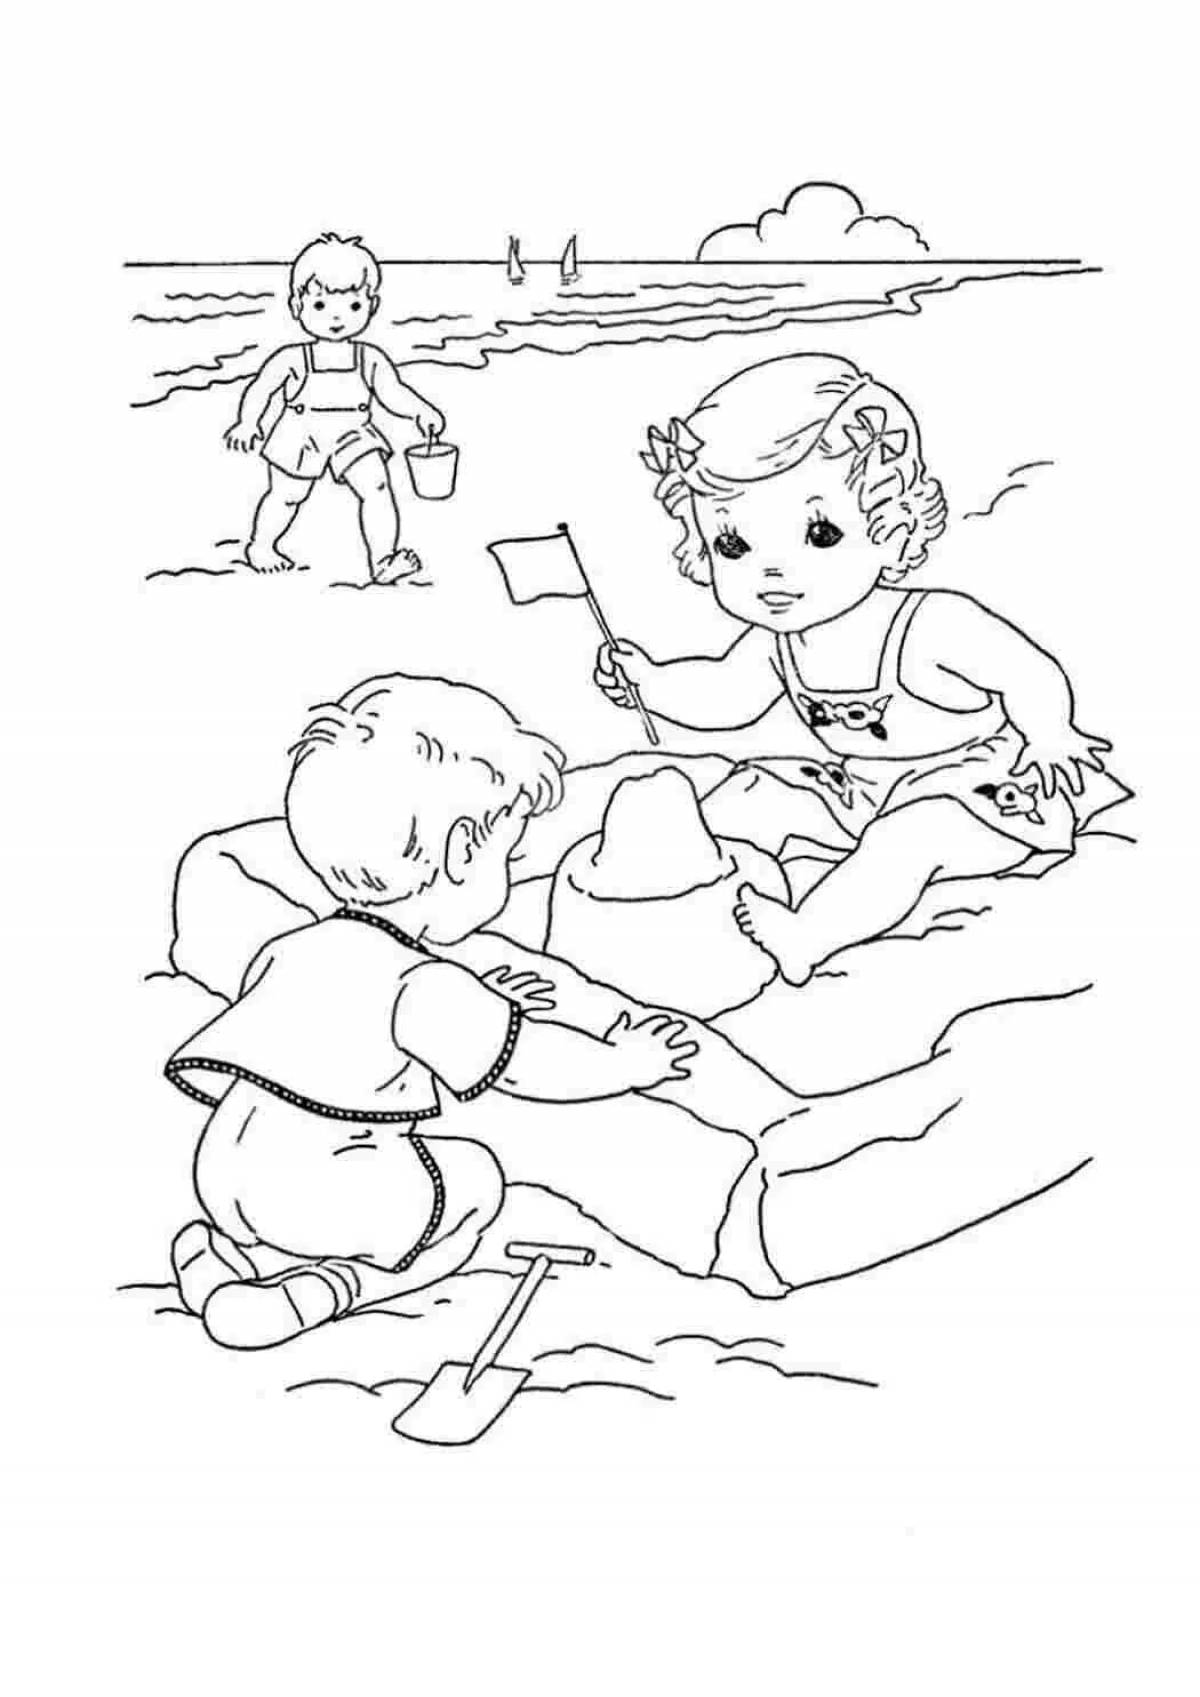 Занимательное рисование песком для всестороннего развития детей